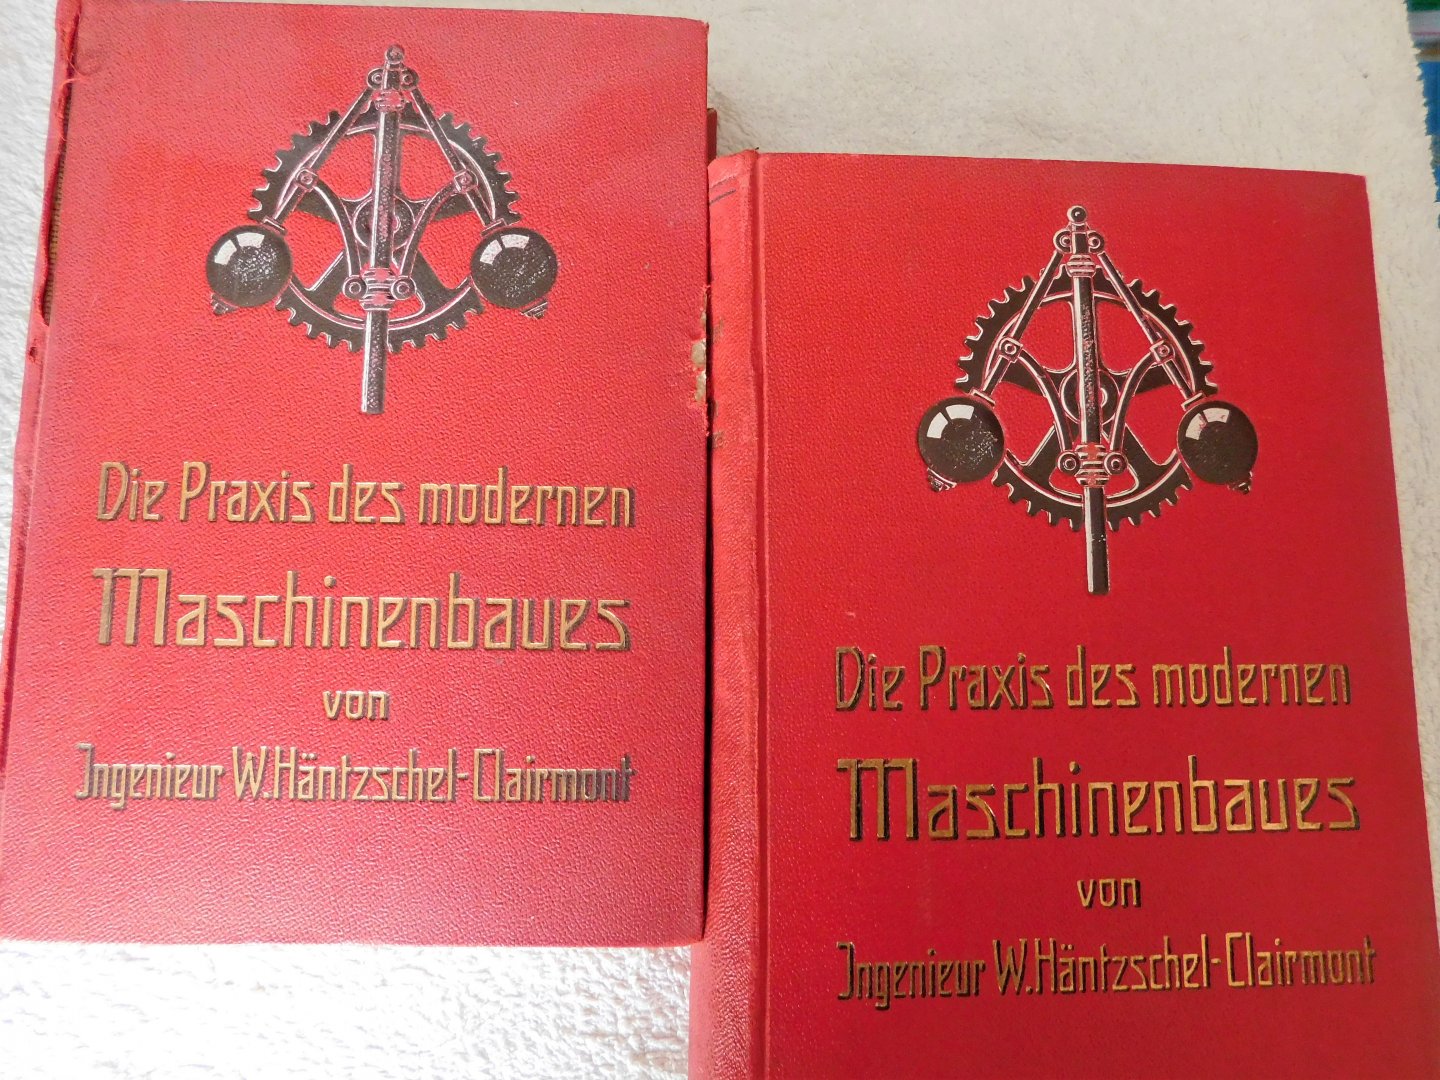 W. Häntzschel-Clairmont - Die Praxis des modernen Maschinenbaus band 1+2 1920